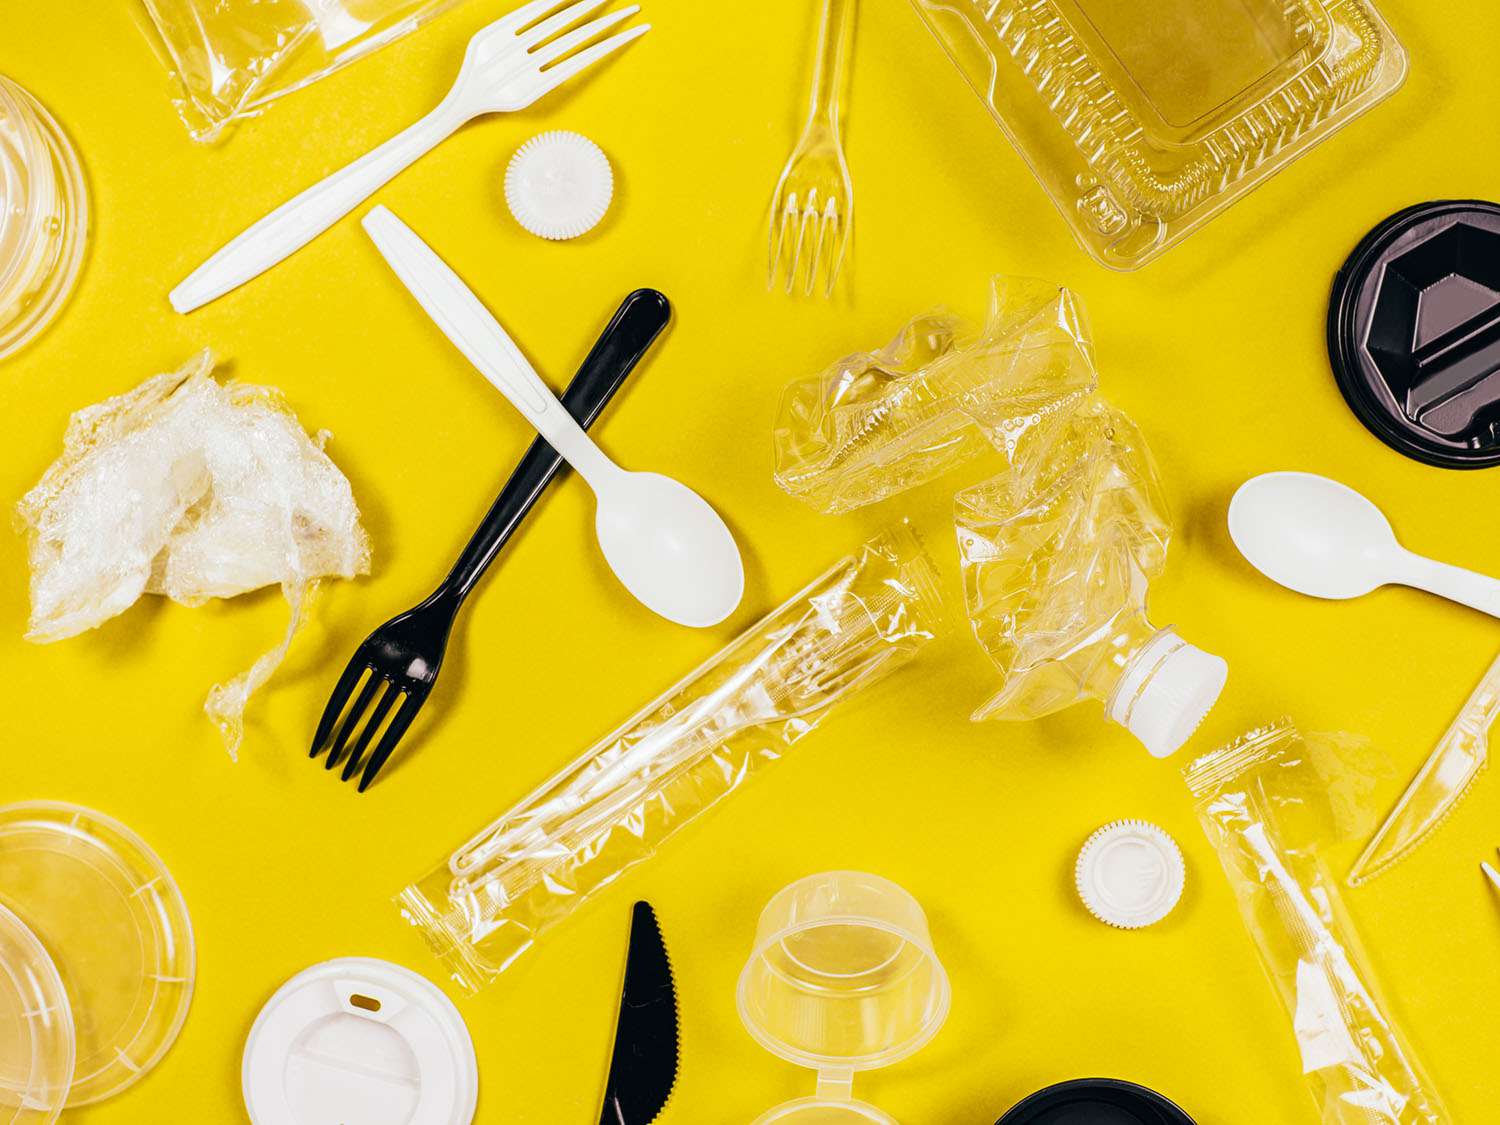 塑料勺子、叉子、食品容器、包装纸和黄色背景的瓶子